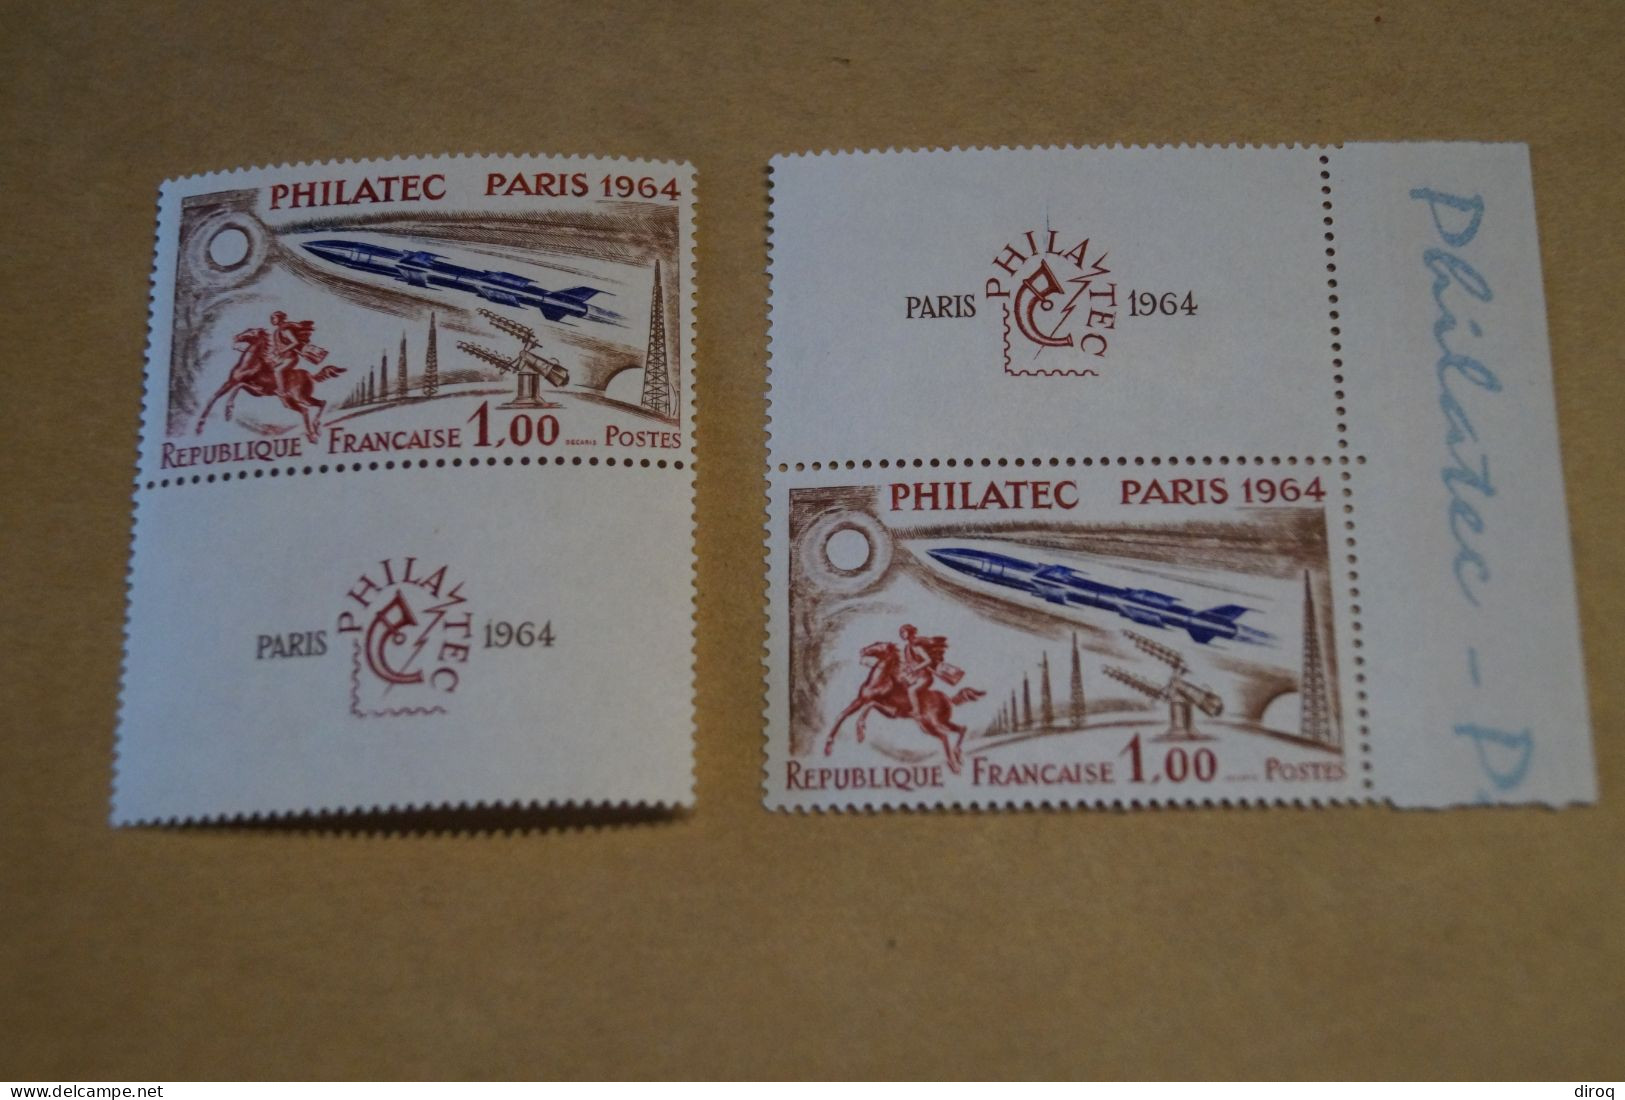 Philatec Paris 1964 ,2 Très Beaux Timbres Neuf,voir Photos,pour Collection - Unused Stamps